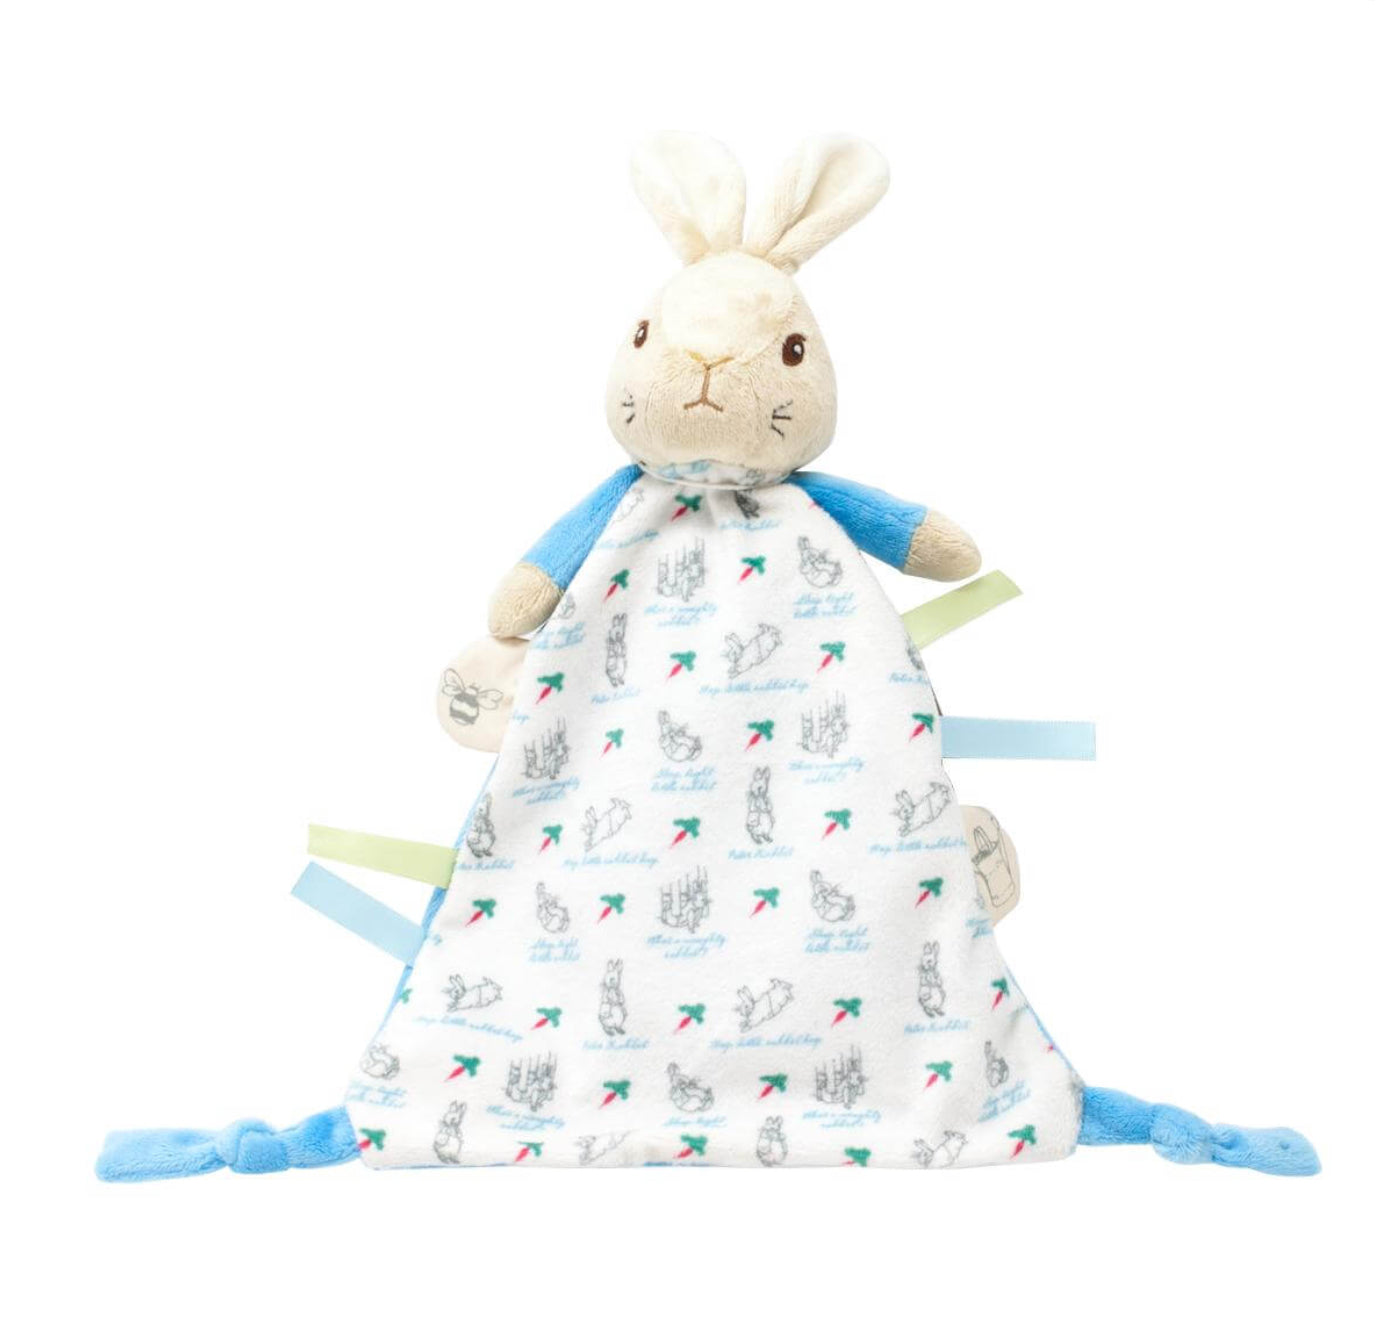 Peter Rabbit Rattle & Comforter Gift Set Rainbow Toys